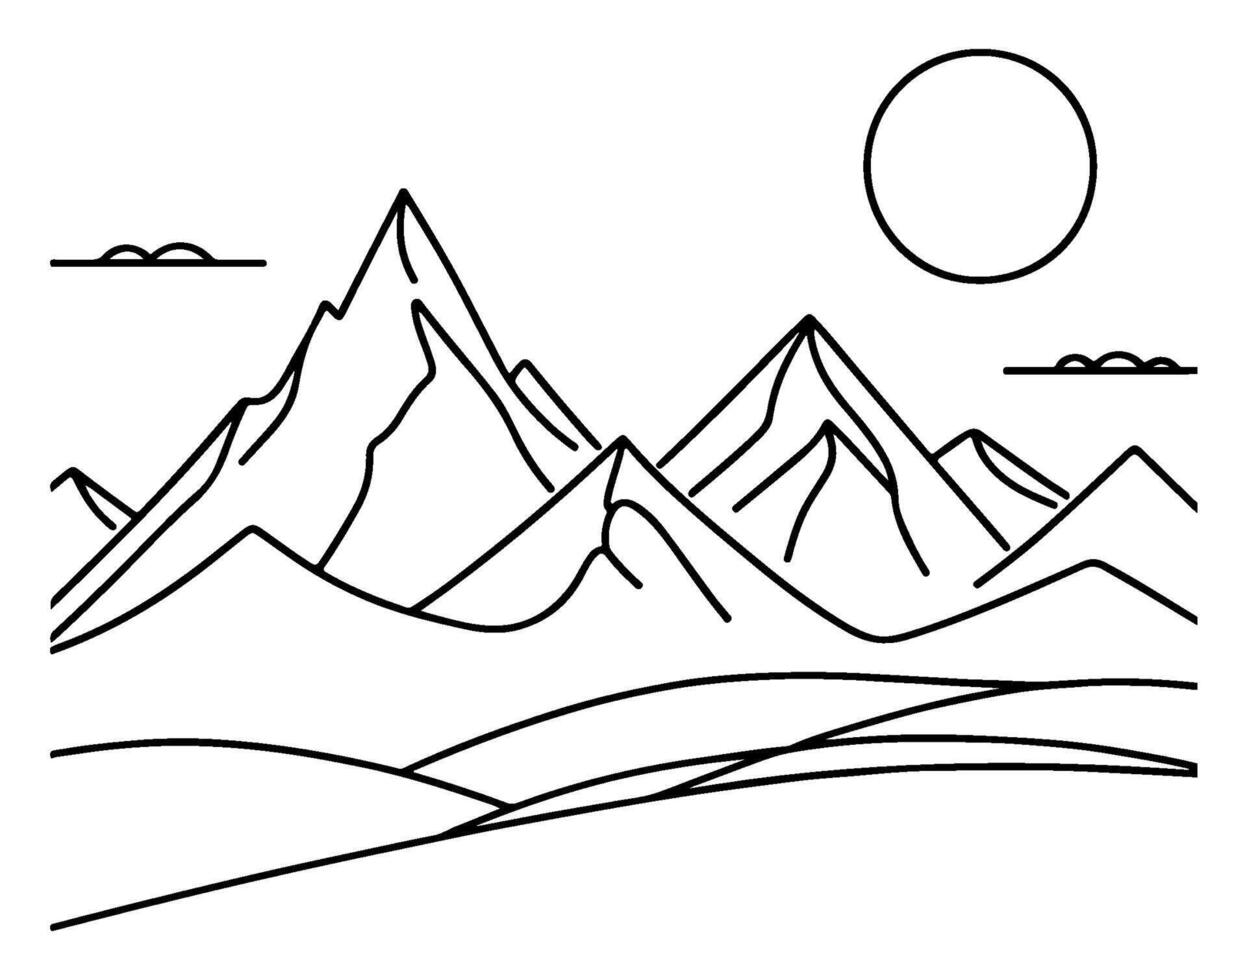 dessin Montagne avec forêt pin des arbres paysage noir ligne esquisser art main tiré linéaire style vecteur illustration